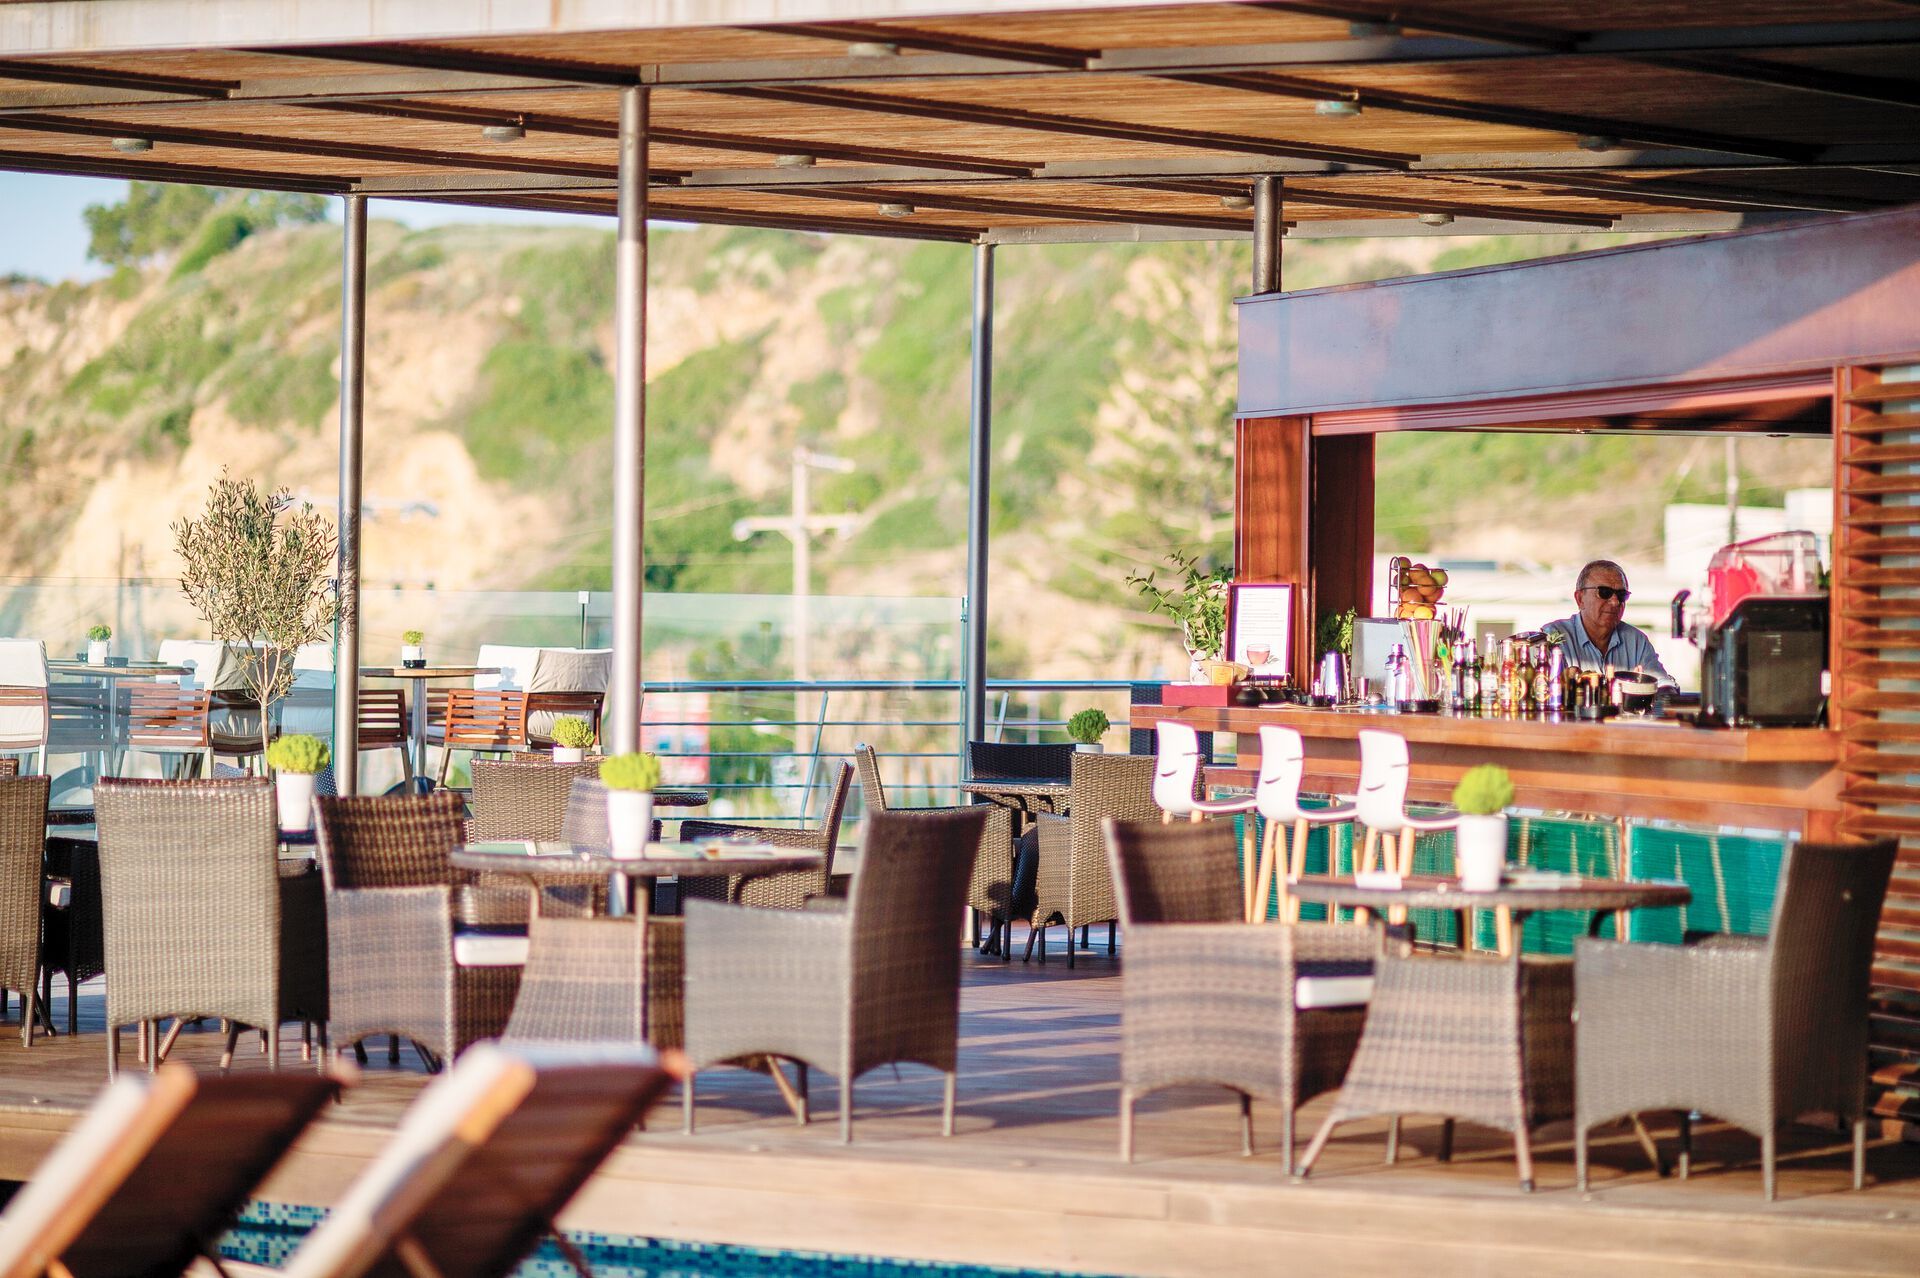 Crète - La Canée - Grèce - Iles grecques - Hôtel Cretan Dream Resort and Spa 5*